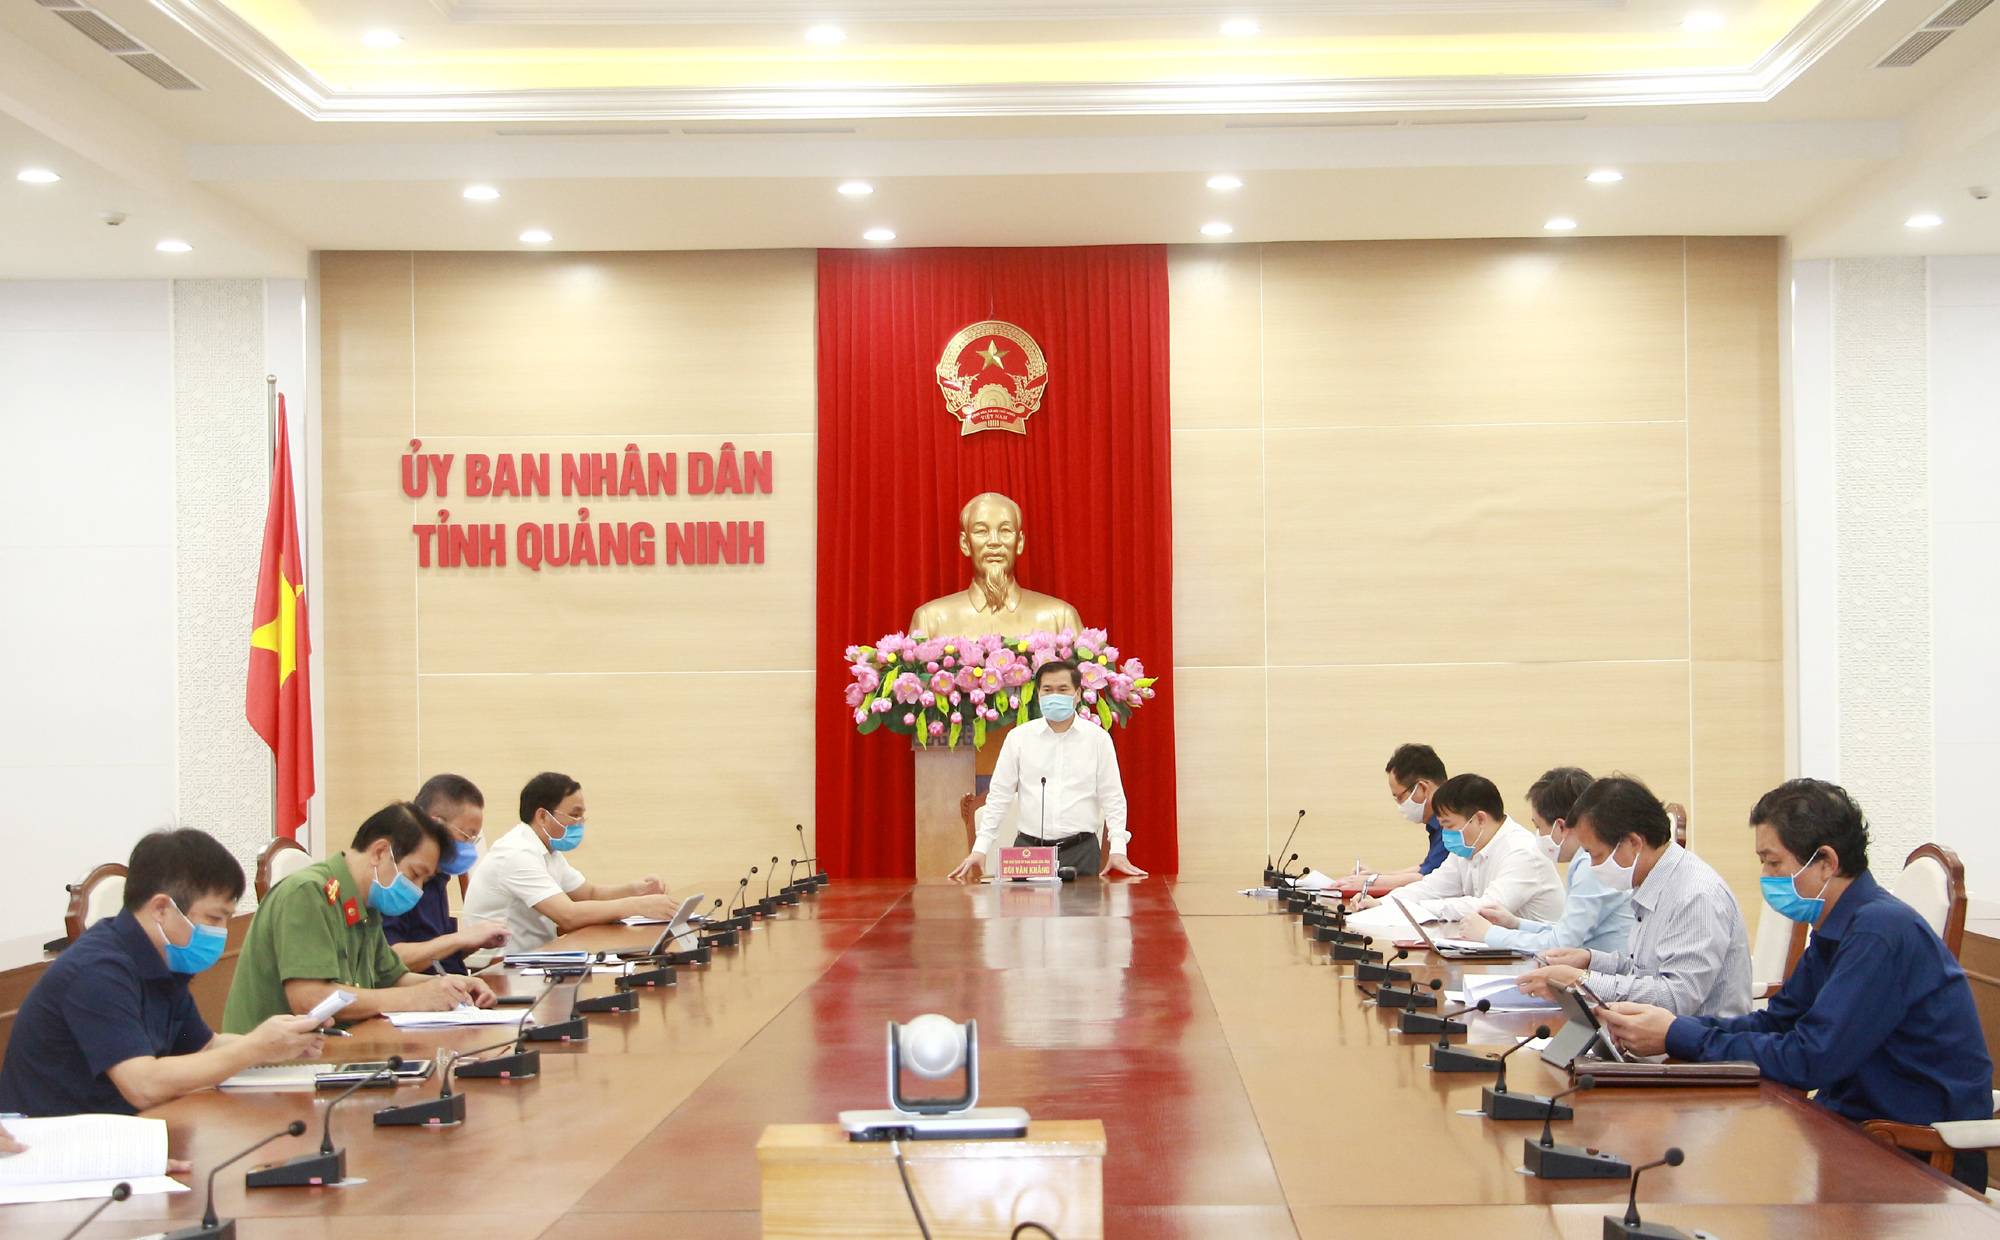 Đồng chí Bùi Văn Khắng, Phó Chủ tịch UBND tỉnh, phát biểu kết luận.